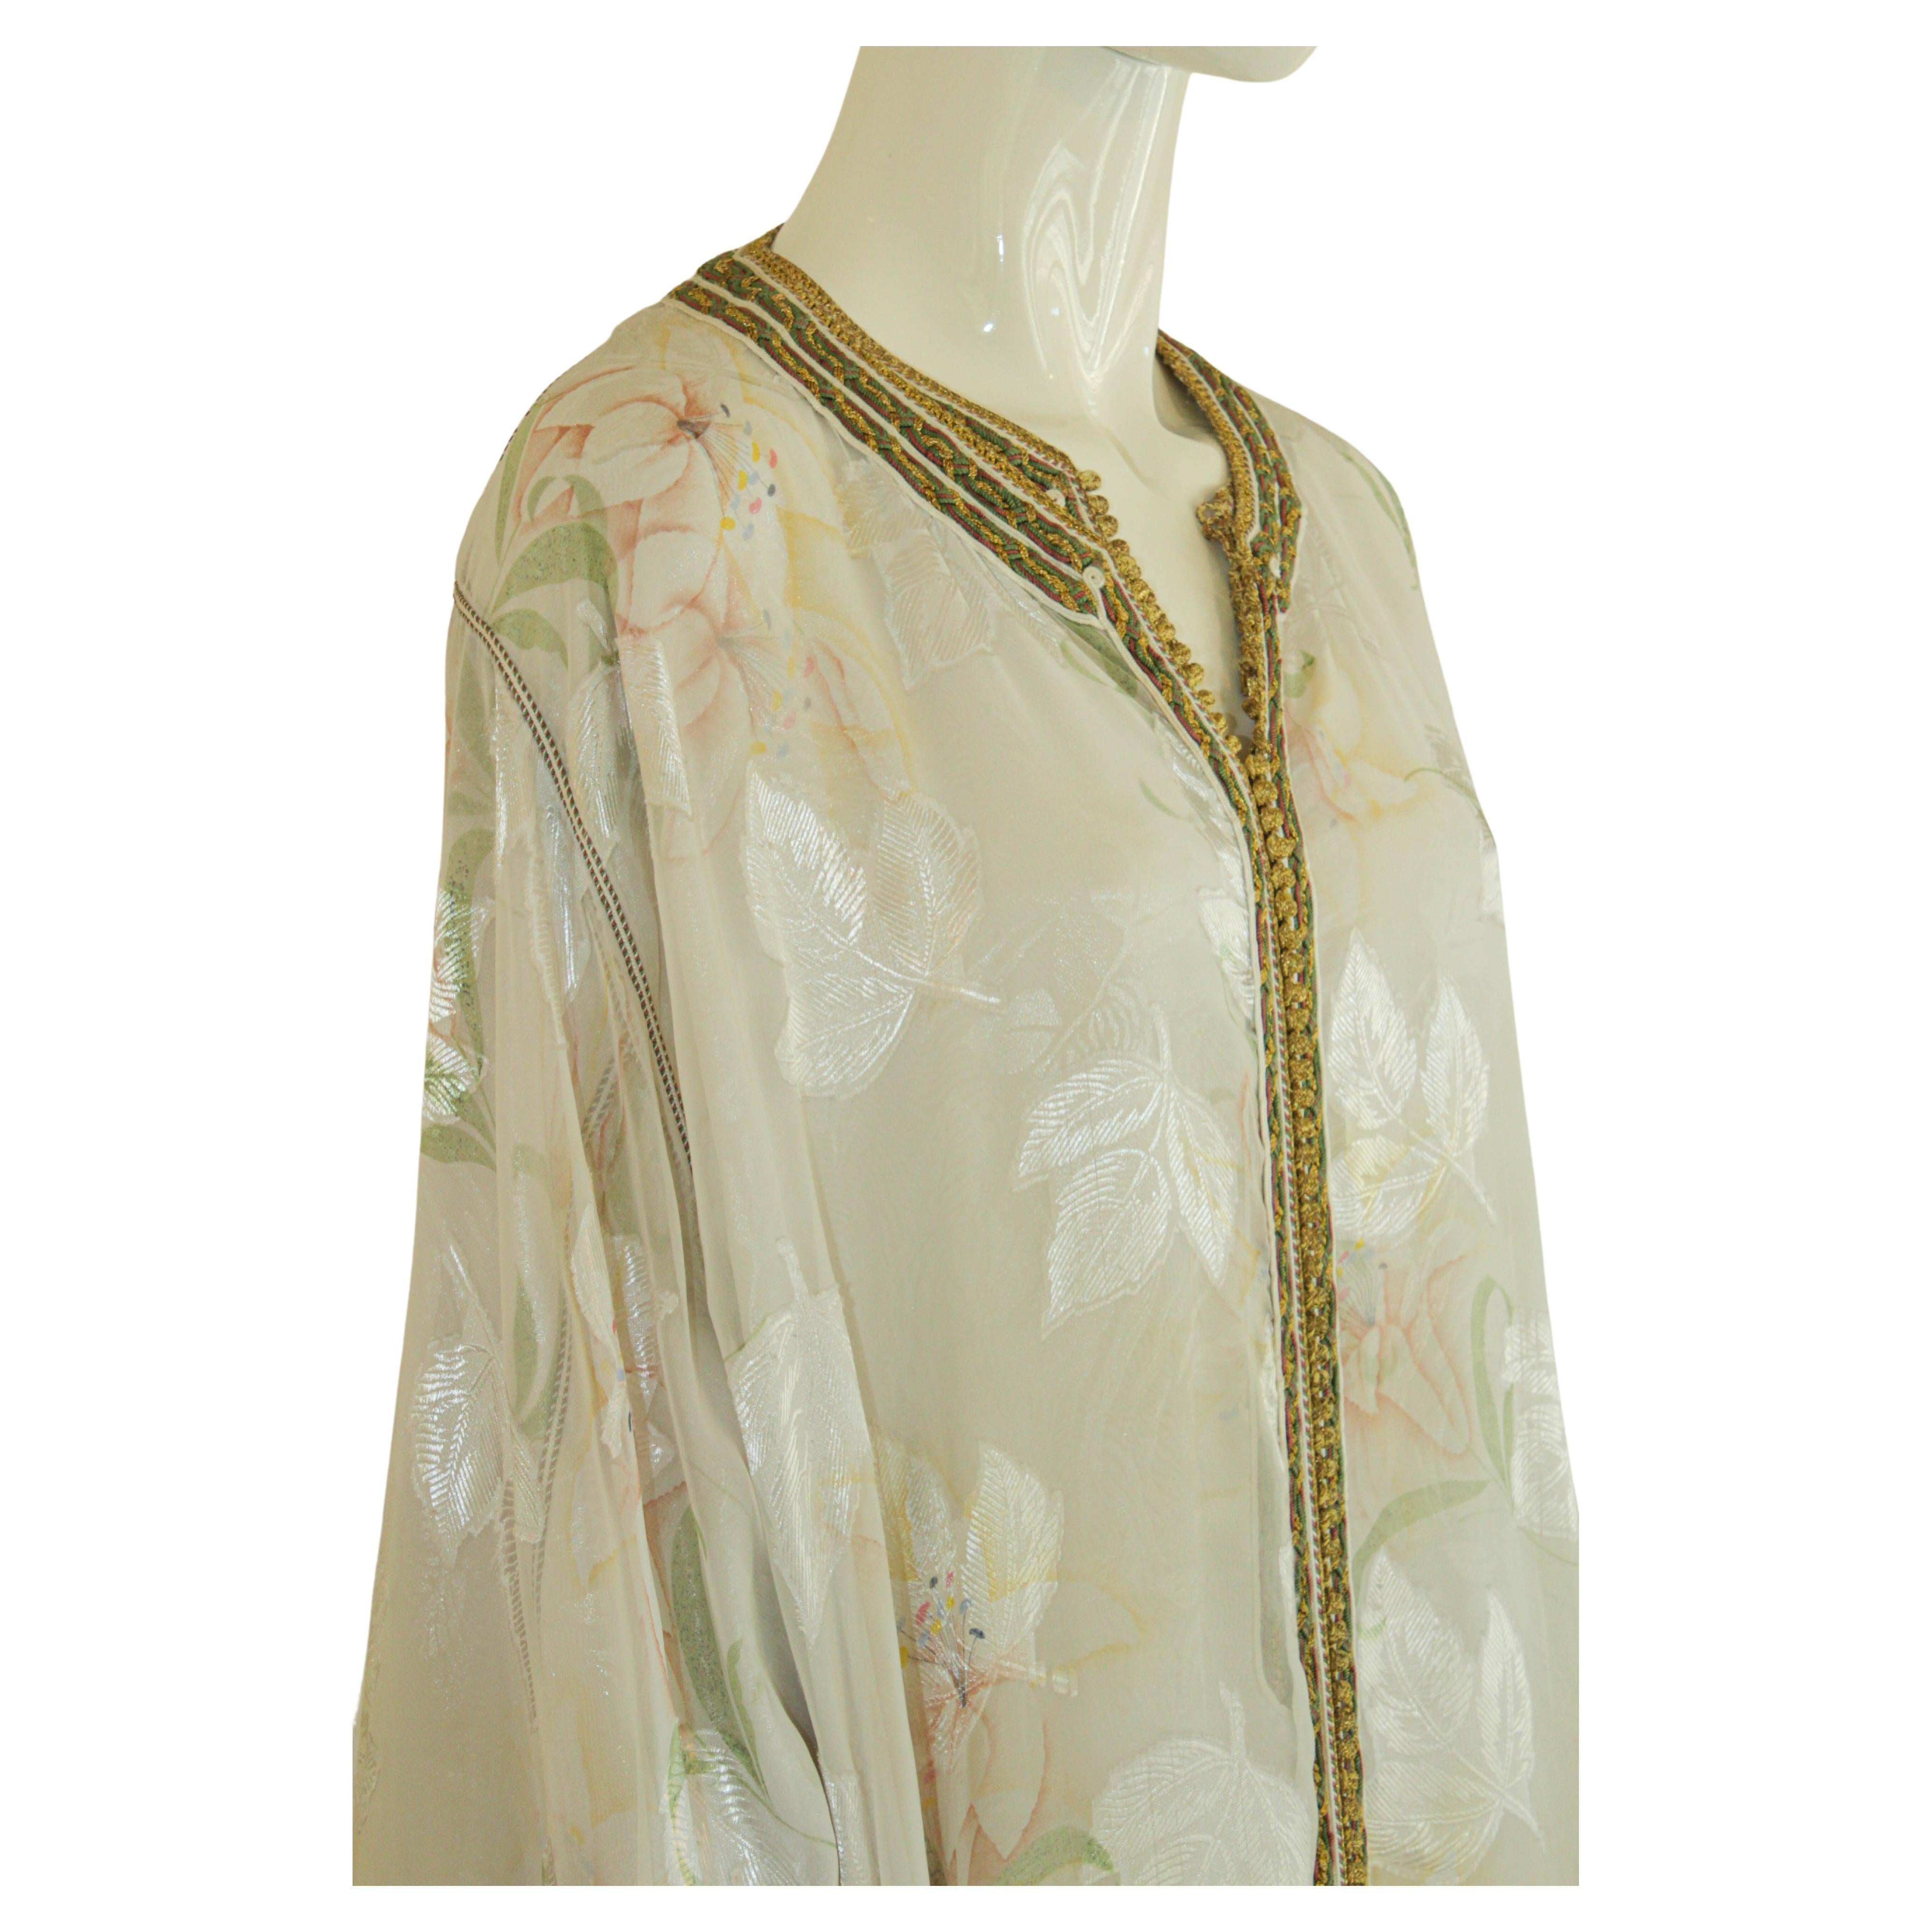 Caftan marocain blanc floral en soie brodé.
Il s'agit d'un ensemble de deux robes que vous pouvez porter ensemble ou séparément,
vers les années 1980.
Cette longue robe maxi set caftan est brodée et embellie entièrement à la main.
Robe d'hôtesse de